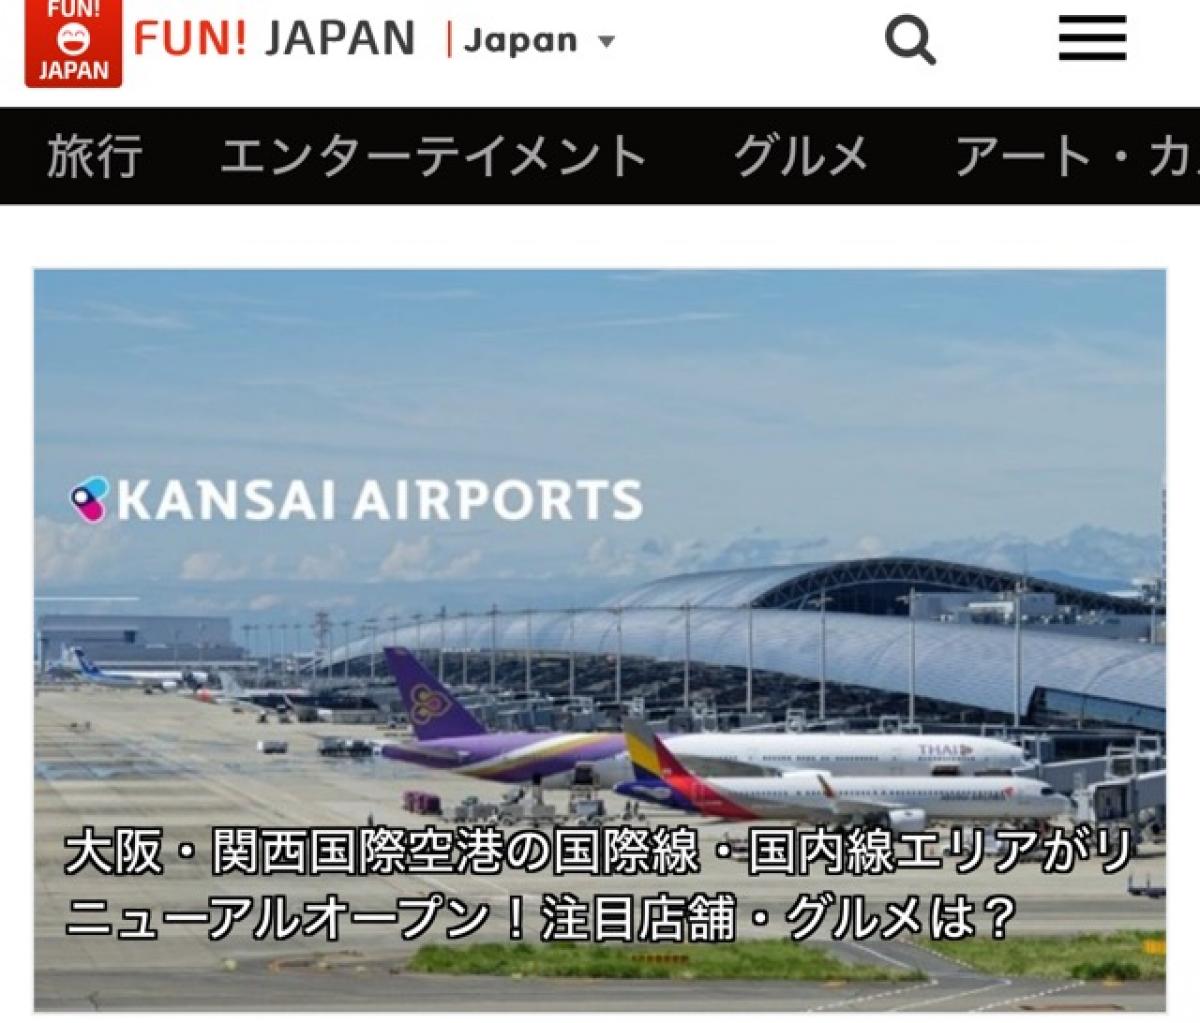 「FUN!JAPAN」に関西空港店が掲載されました。